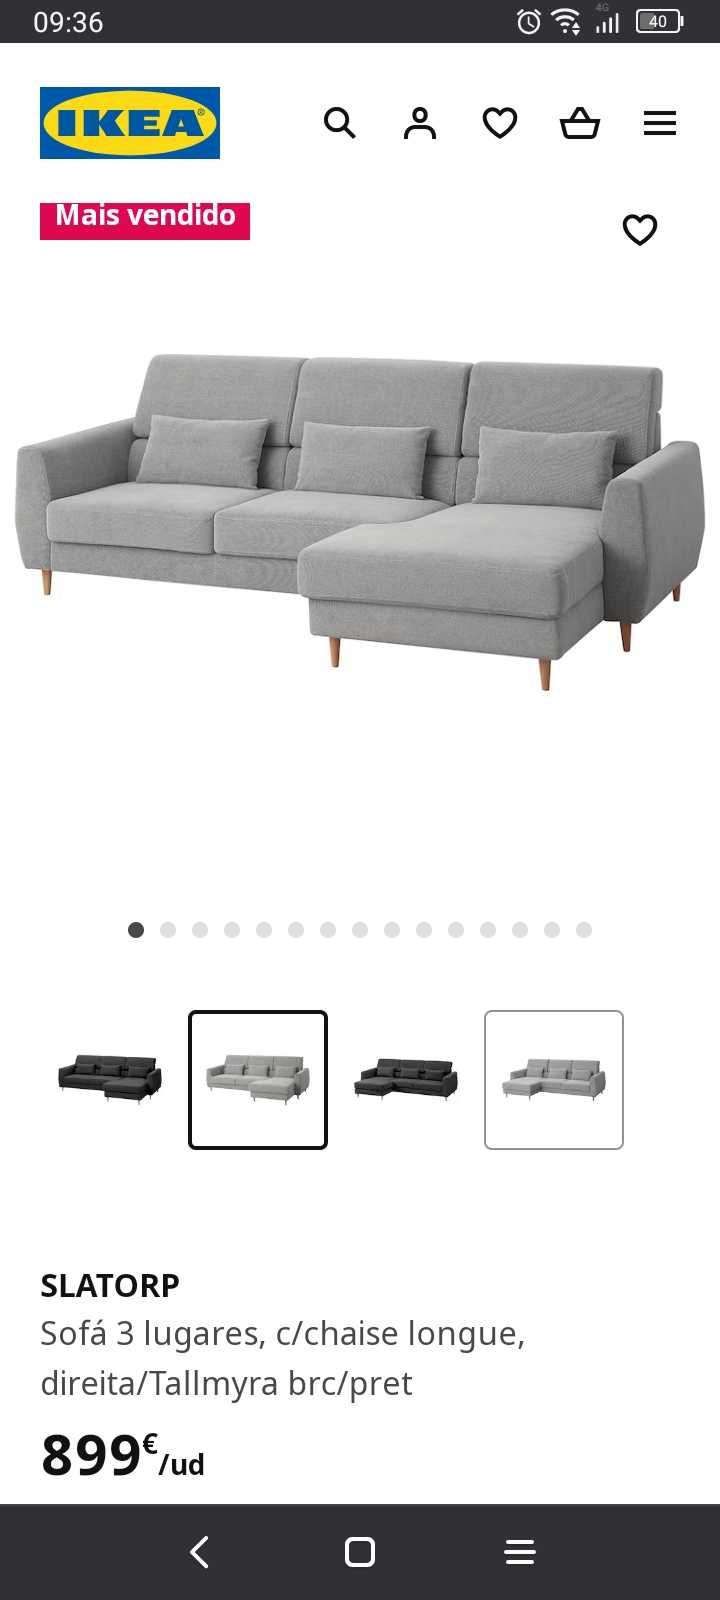 Sofá 3 lugares com chaise longue Slatorp IKEA (como novo)